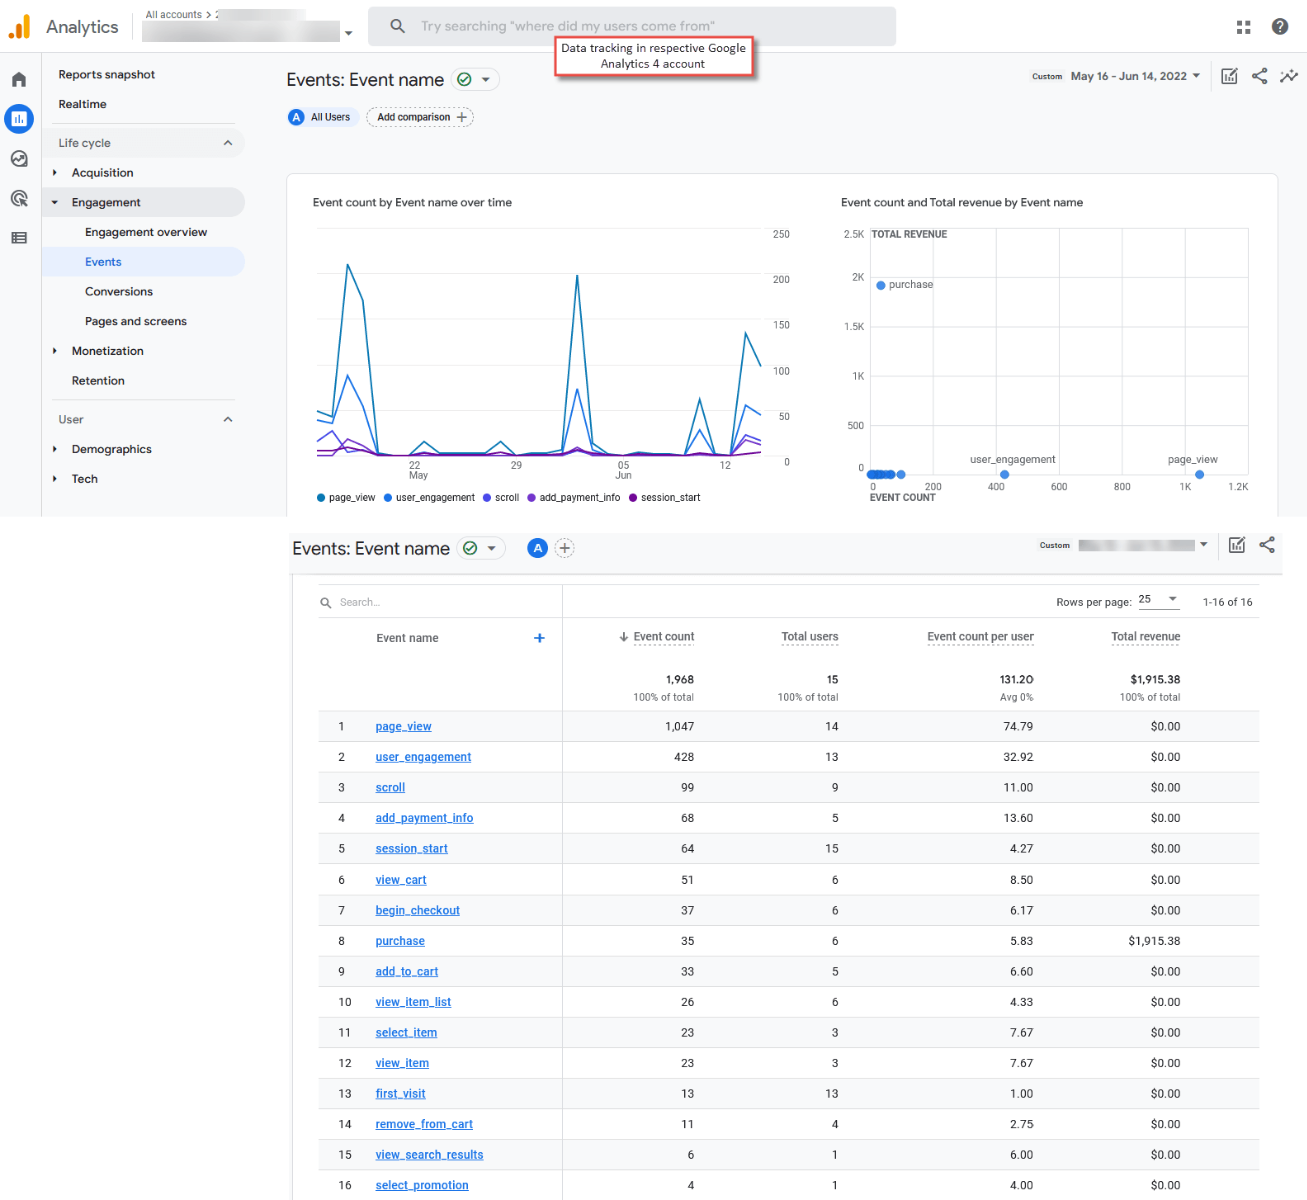 Magento 2 Data Tracking in Google Analytics 4